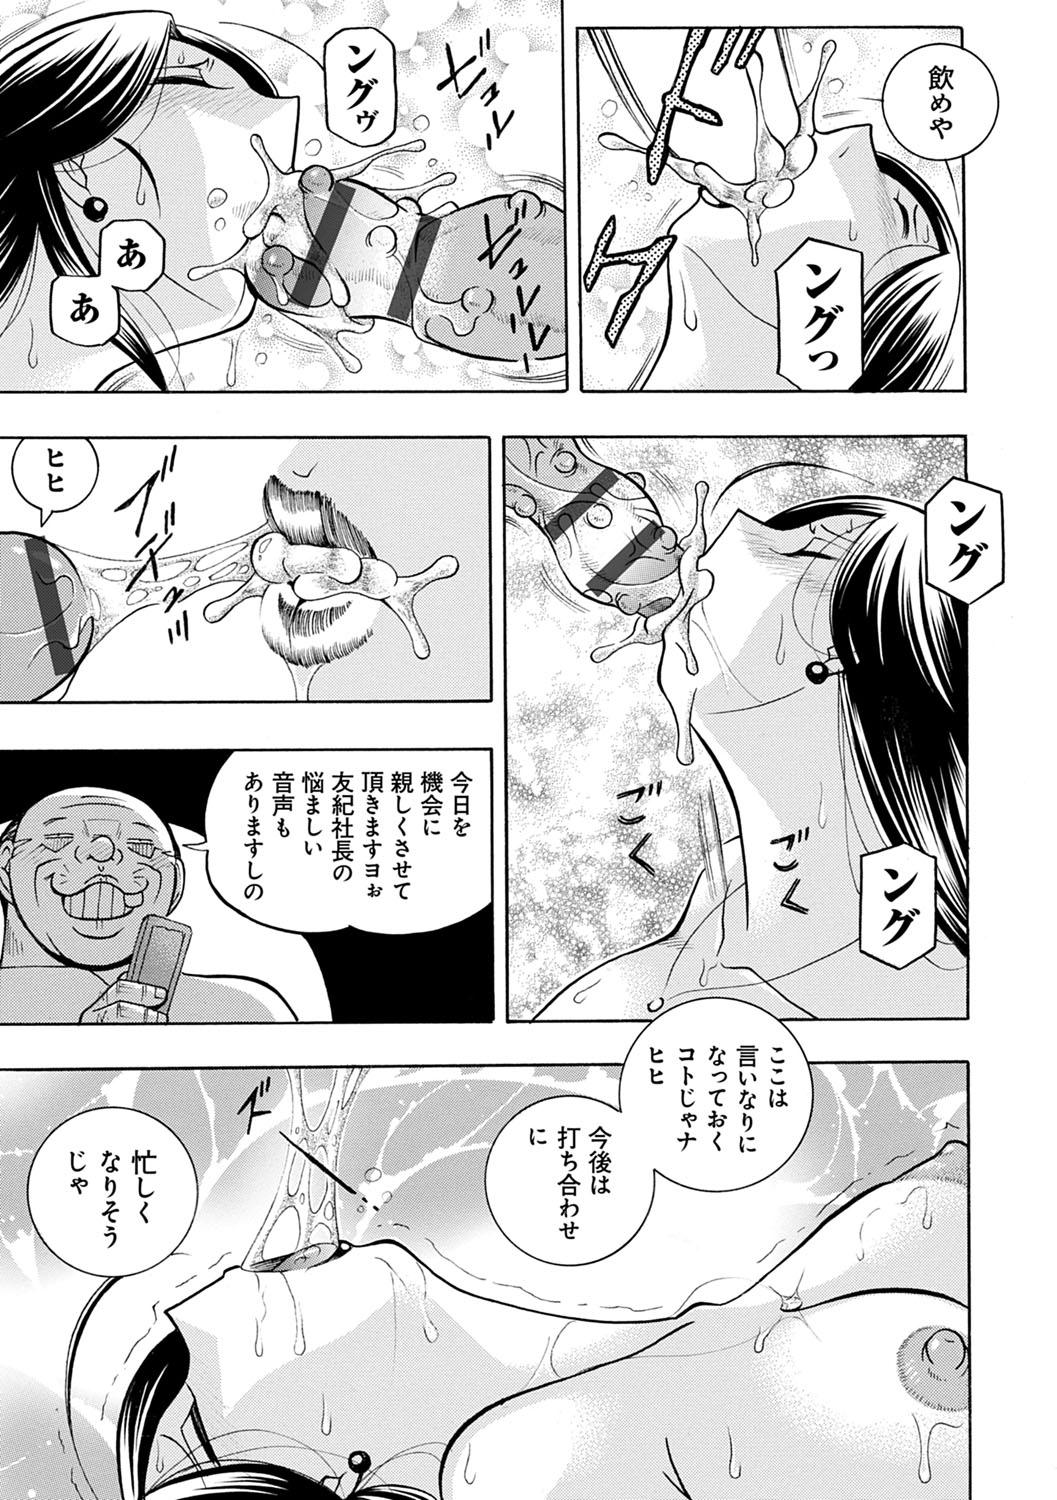 [Chuuka Naruto] Bijin Shachou Yuki ~Mitsuyaku no Nikusettai~ - YUKI of The Beautiful Chief Executive Officer ~The secret sweet treaty by sexual reception~ [Digital] 76